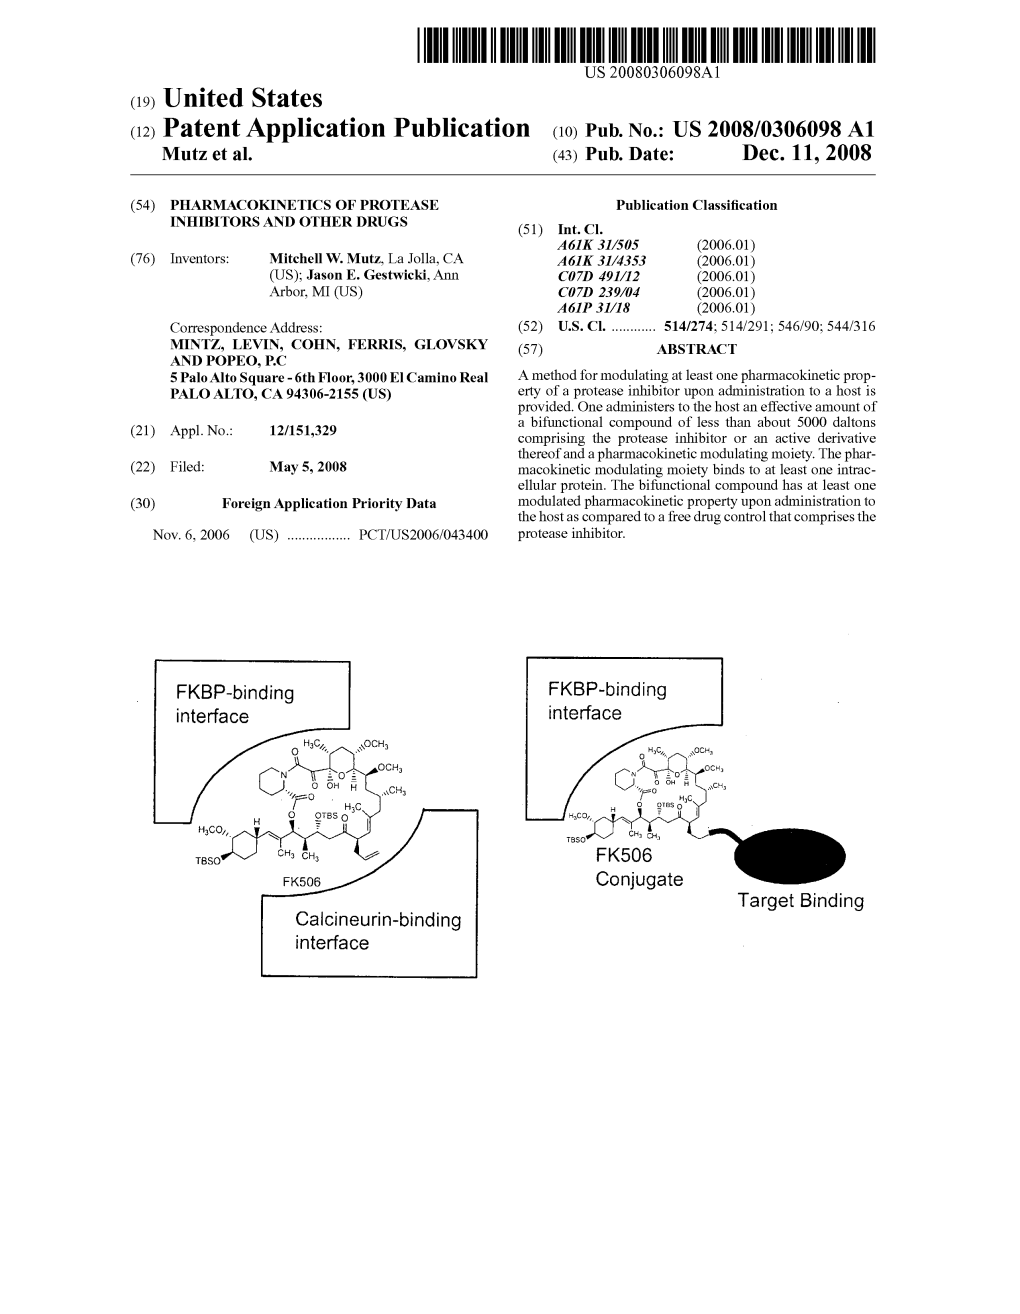 (12) Patent Application Publication (10) Pub. No.: US 2008/0306098 A1 Mutz Et Al